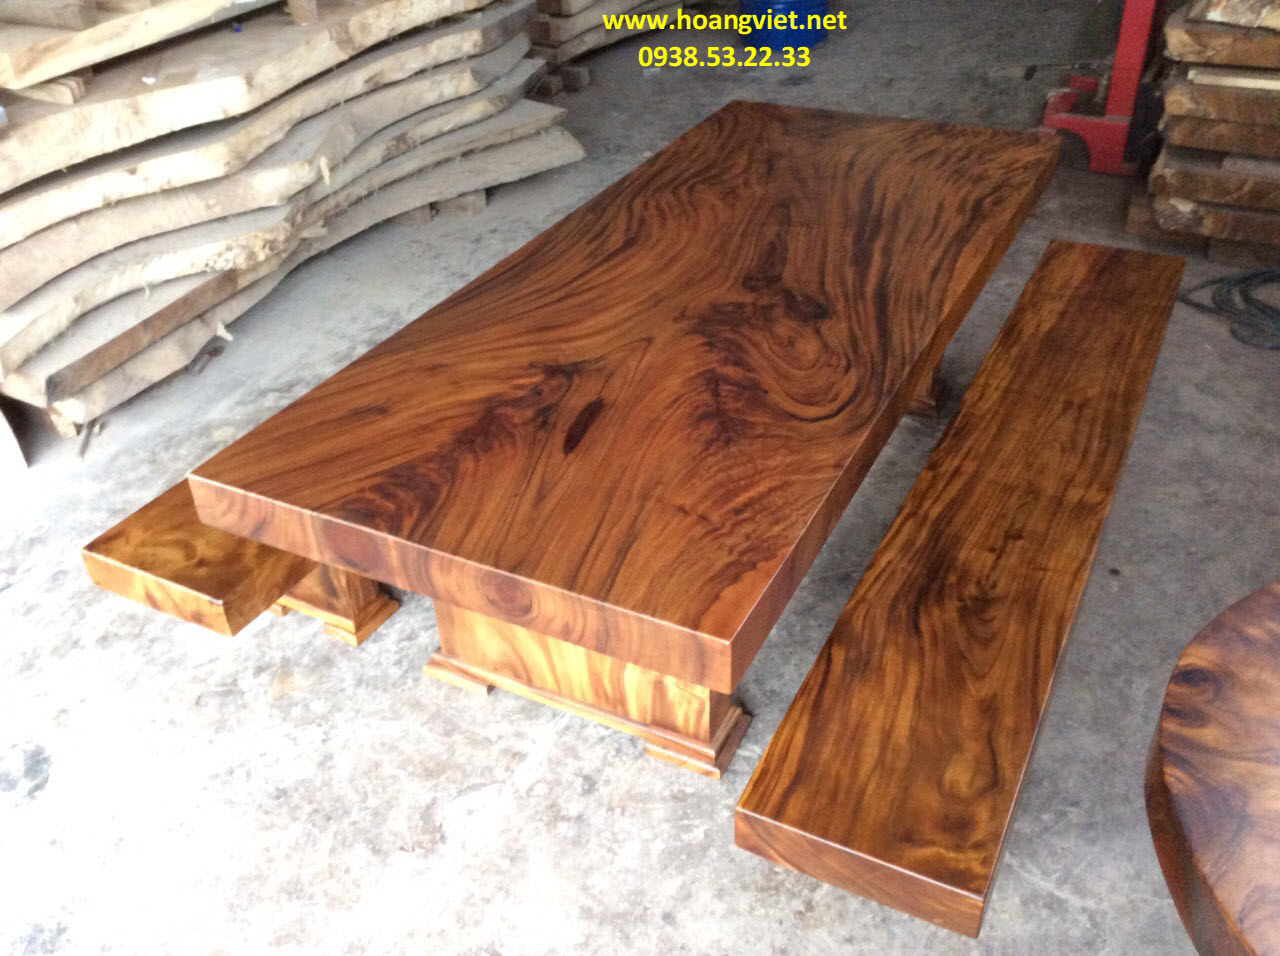 Bộ bàn ghế gỗ 3 tấm giá tốt và đẹp nhất trong các loại gỗ tự nhiên.